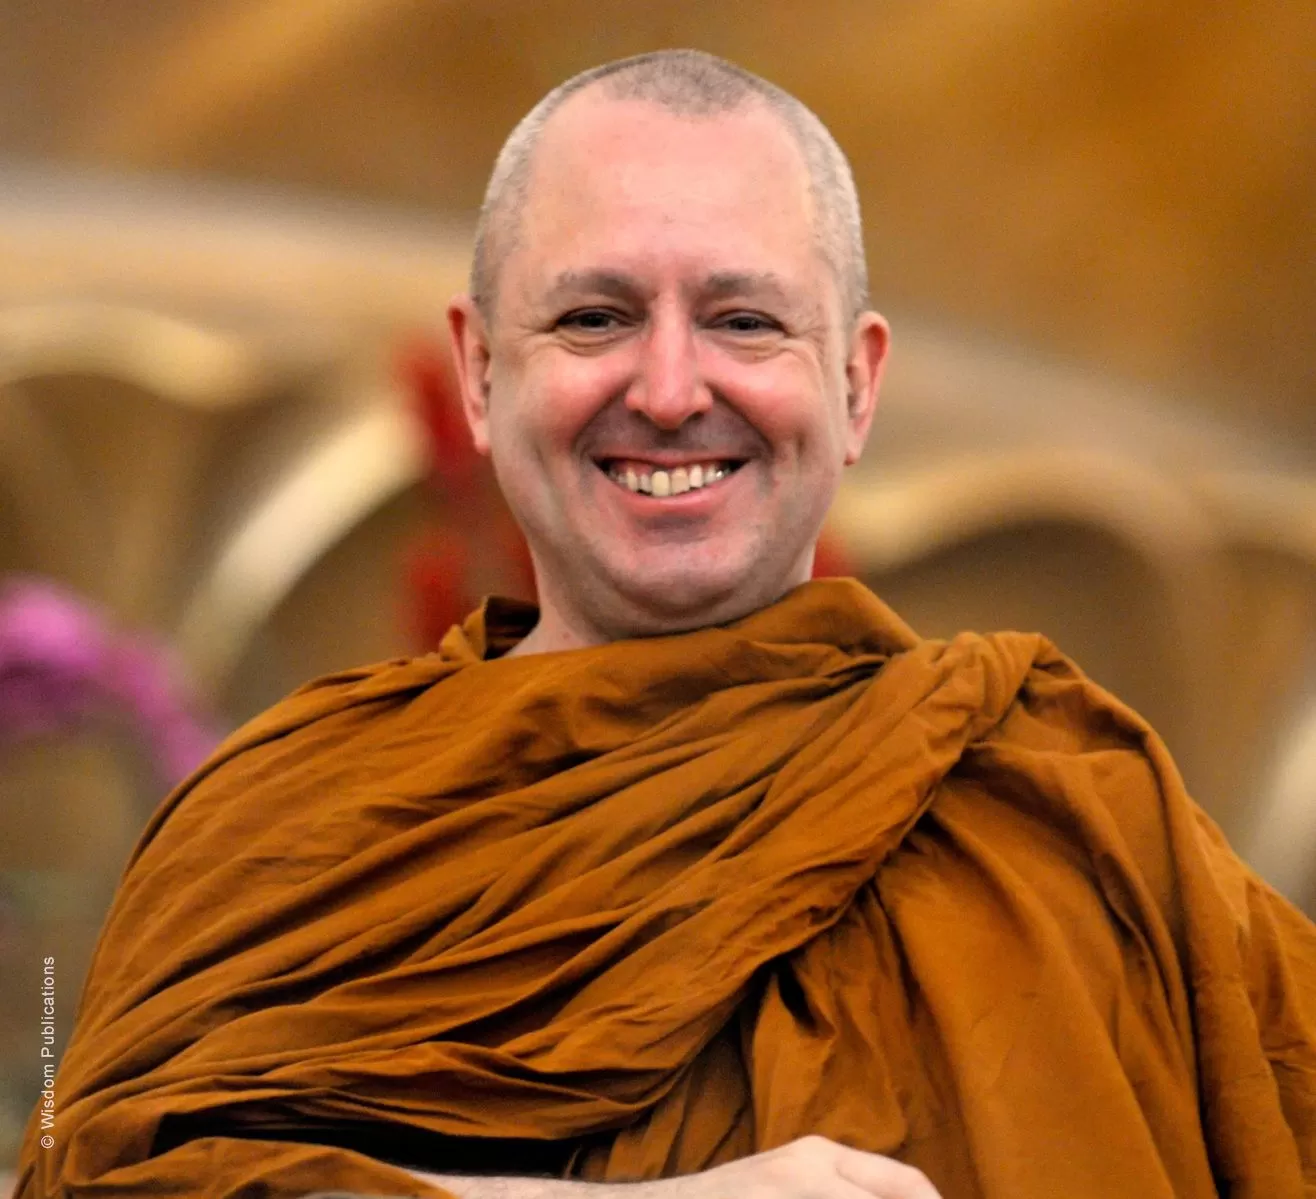 CHIẾN TRANH VÀ HÒA BÌNH: GÓC NHÌN PHẬT GIÁO - Tỳ Khưu Bhikkhu Bodhi - Thư Viện Hoa Sen